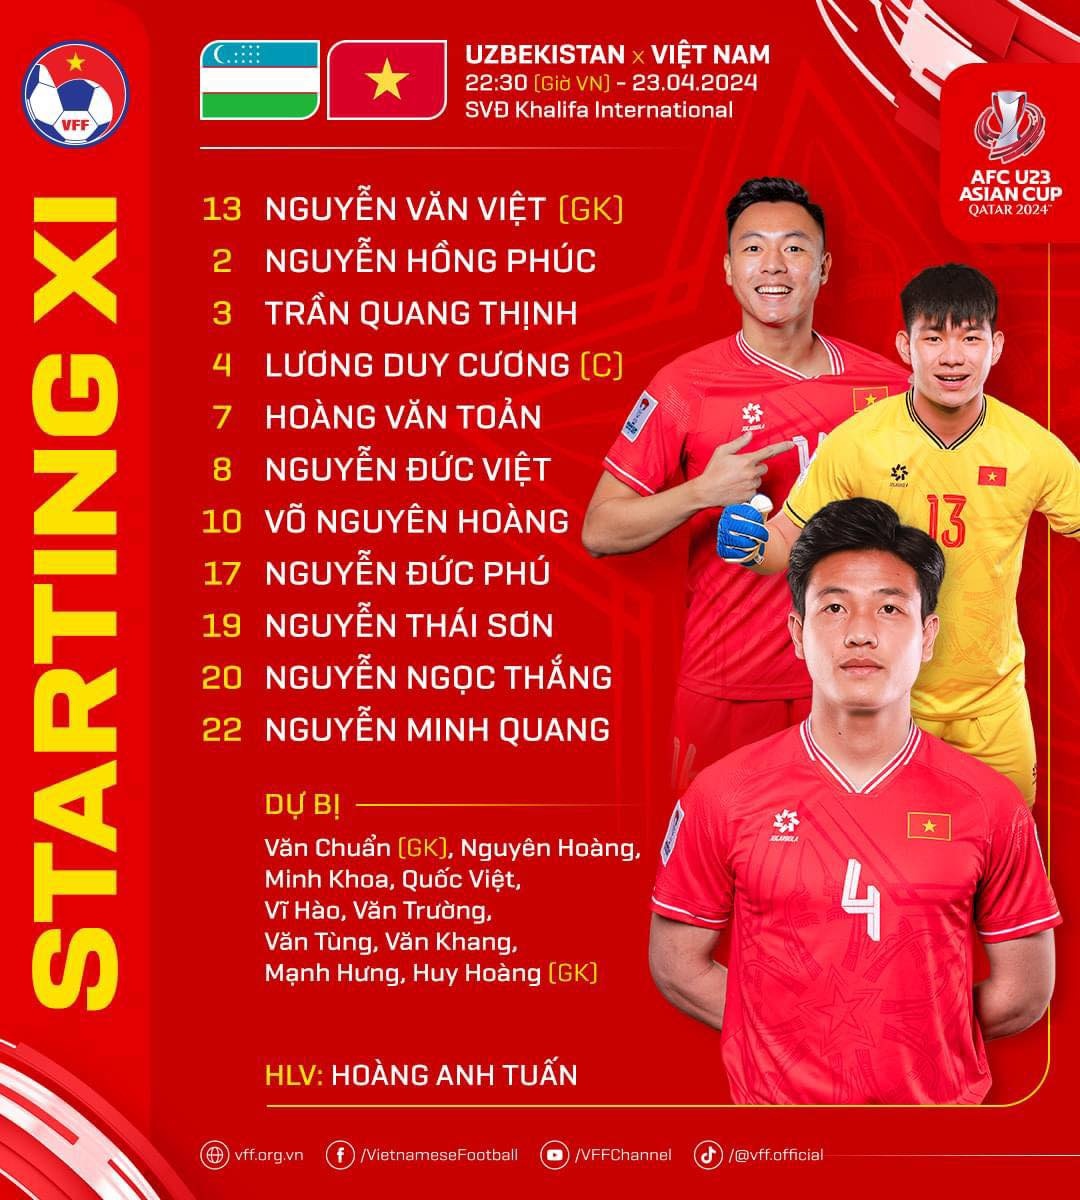 Thua Uzbekistan 0-3, U23 Việt Nam chạm trán Iraq ở tứ kết giải châu Á - ảnh 3